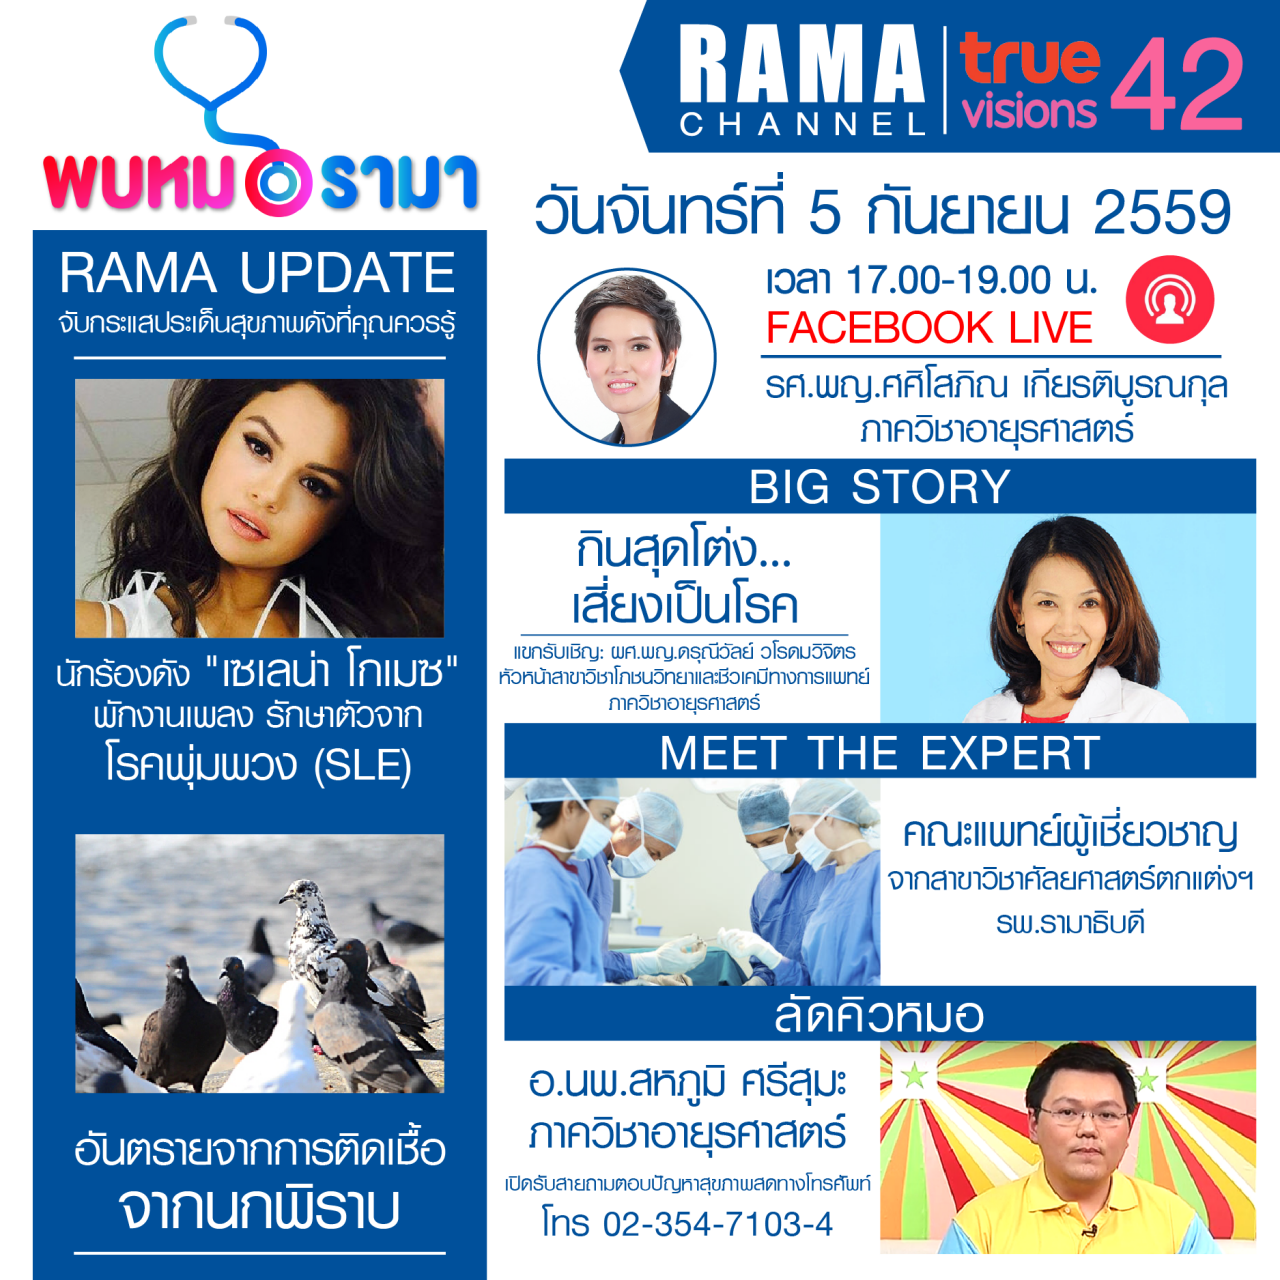 ติดตามรายการ "พบหมอรามา" ทางสถานี RAMA CHANNEL ได้แล้ววันนี้!!!